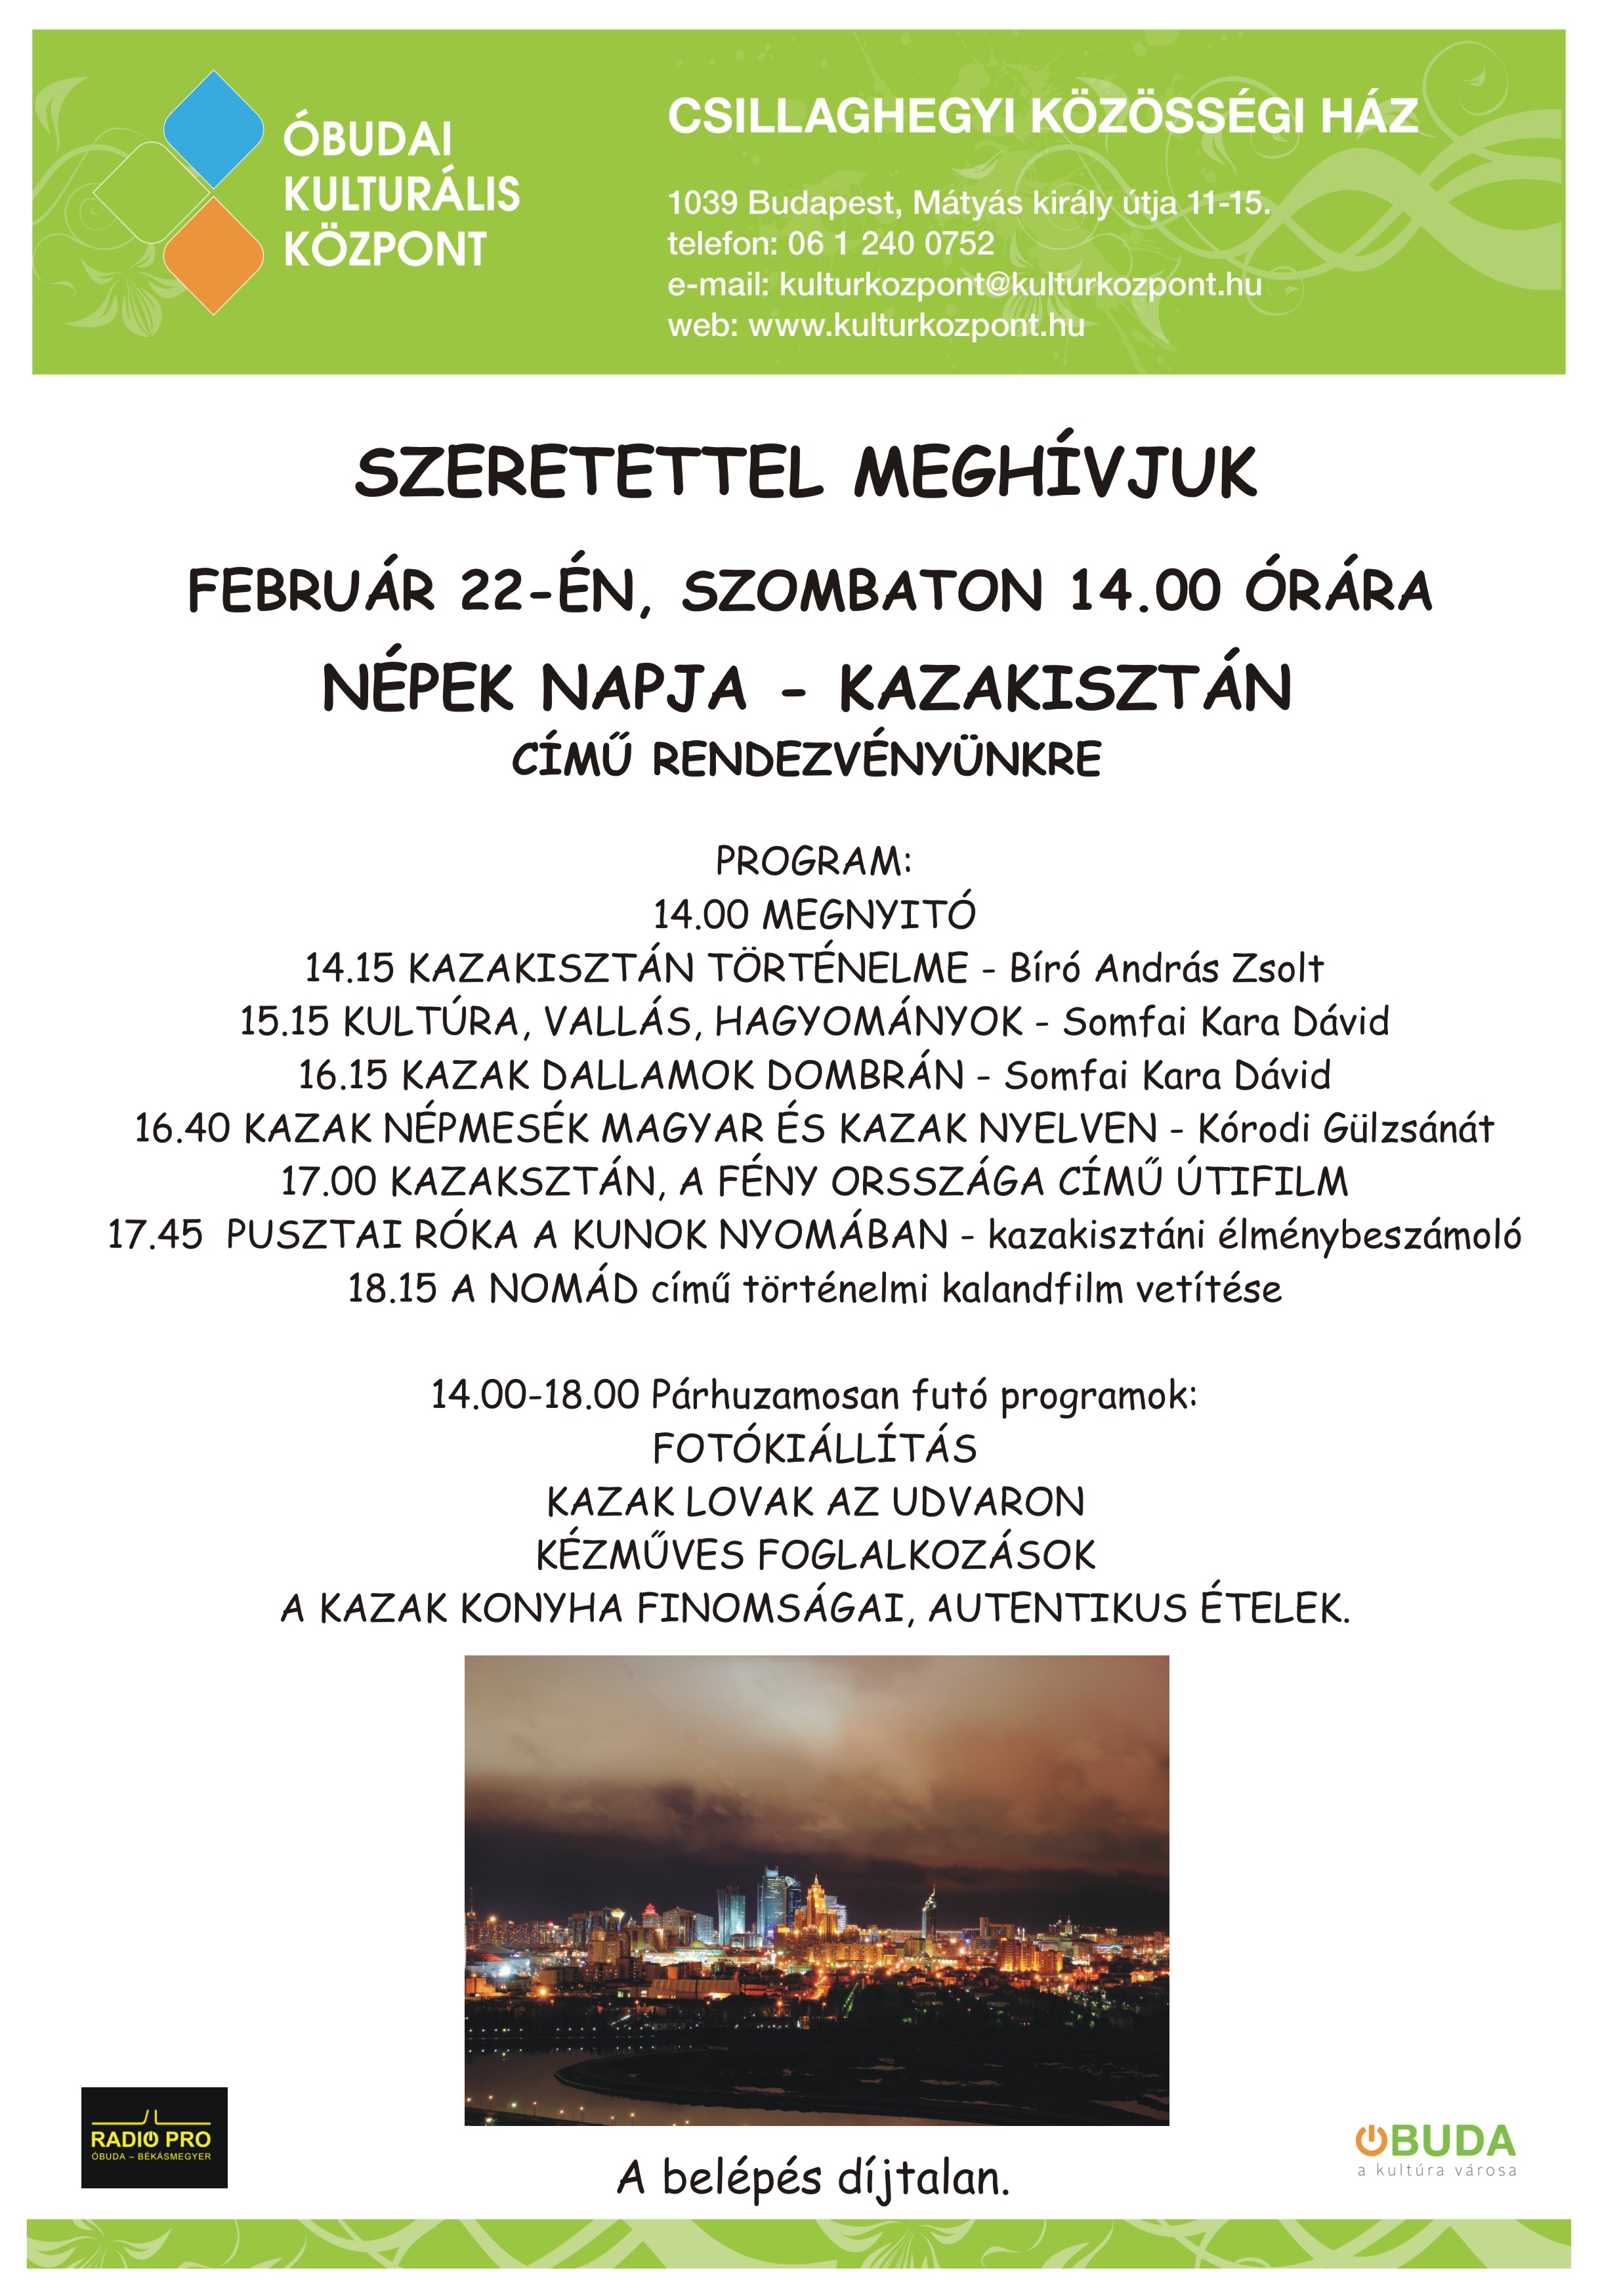 Meghívó,Népek Napja-Kazakisztán (2)